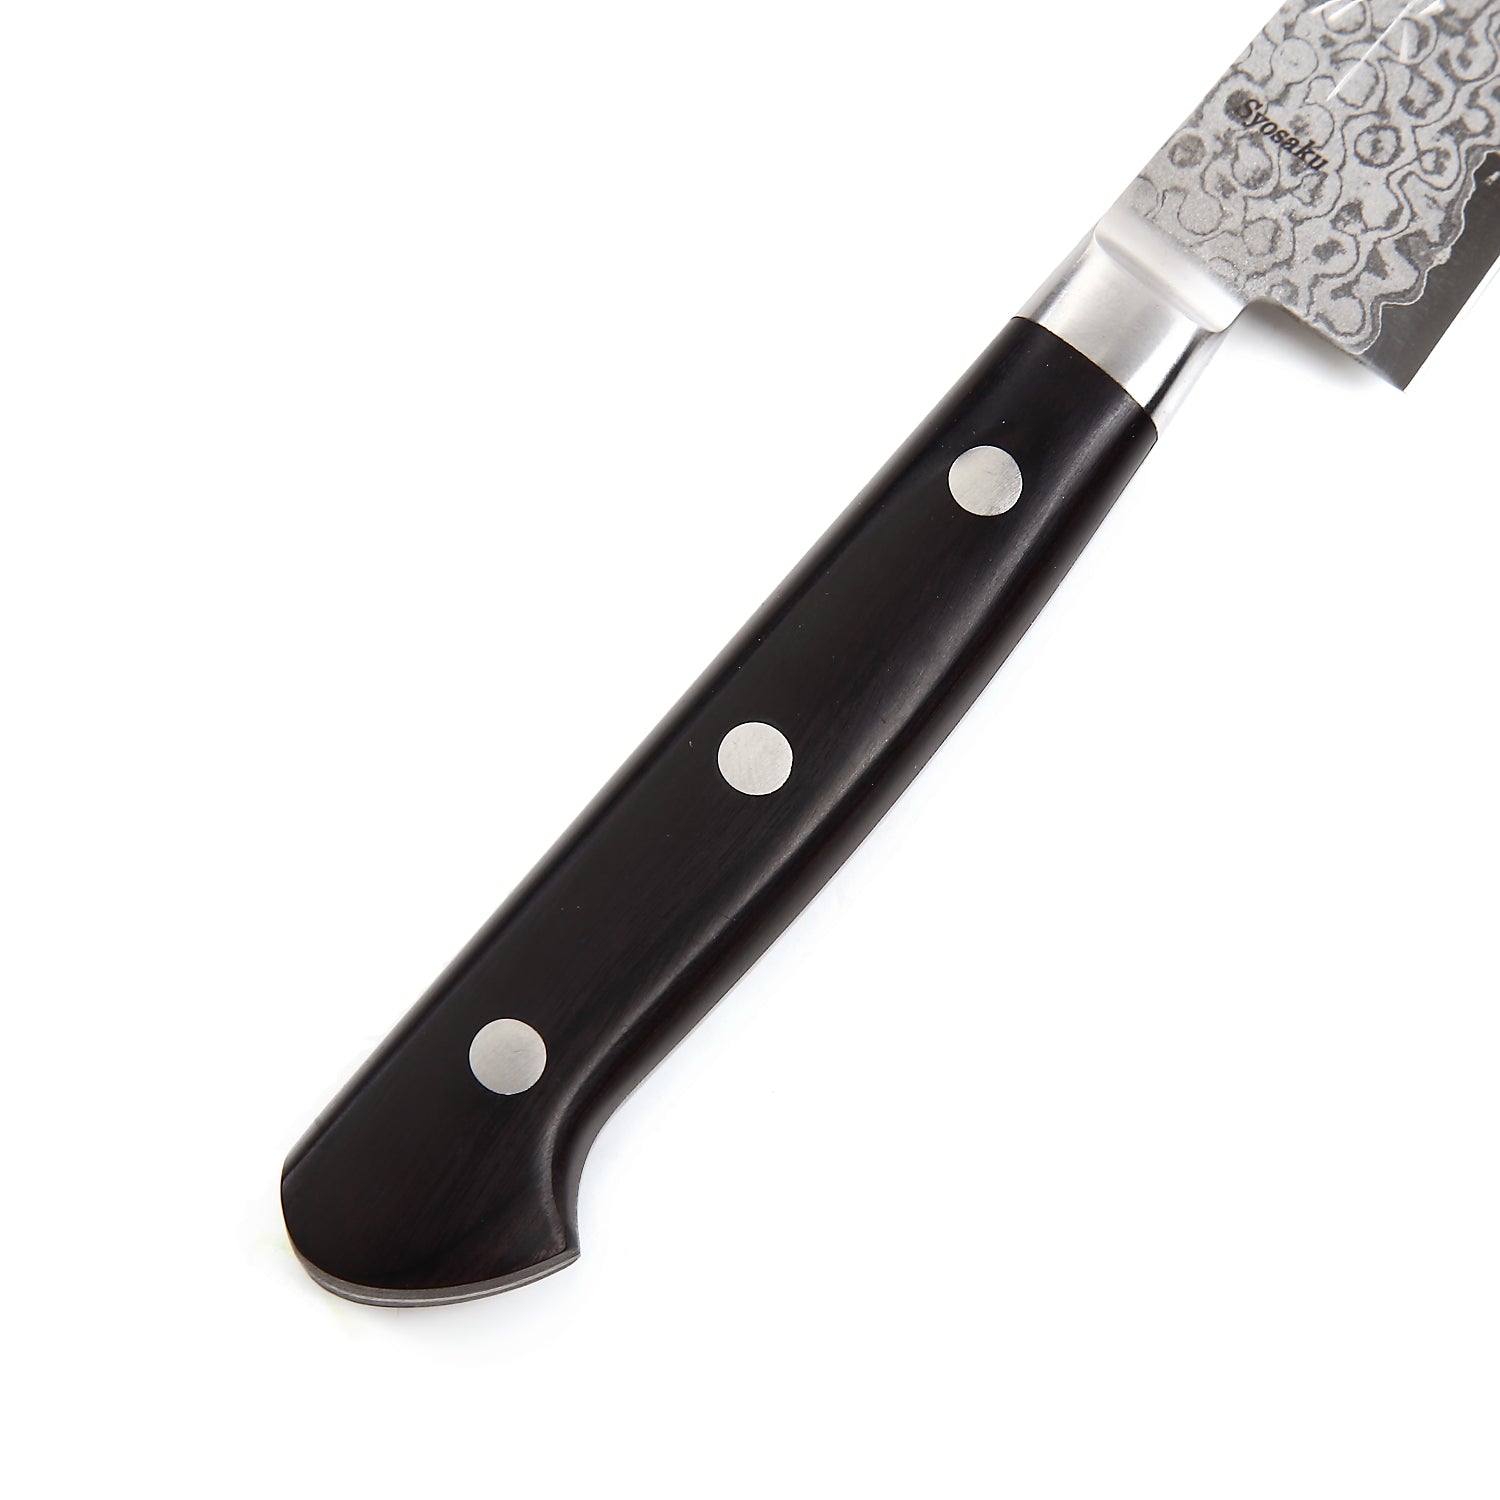 Syosaku Japanese Petty Best Sharp Kitchen Chef Knife Shaded Damascus VG-10 16 Layer Black Pakkawood Handle, 5.3-inch (135mm) - Syosaku-Japan